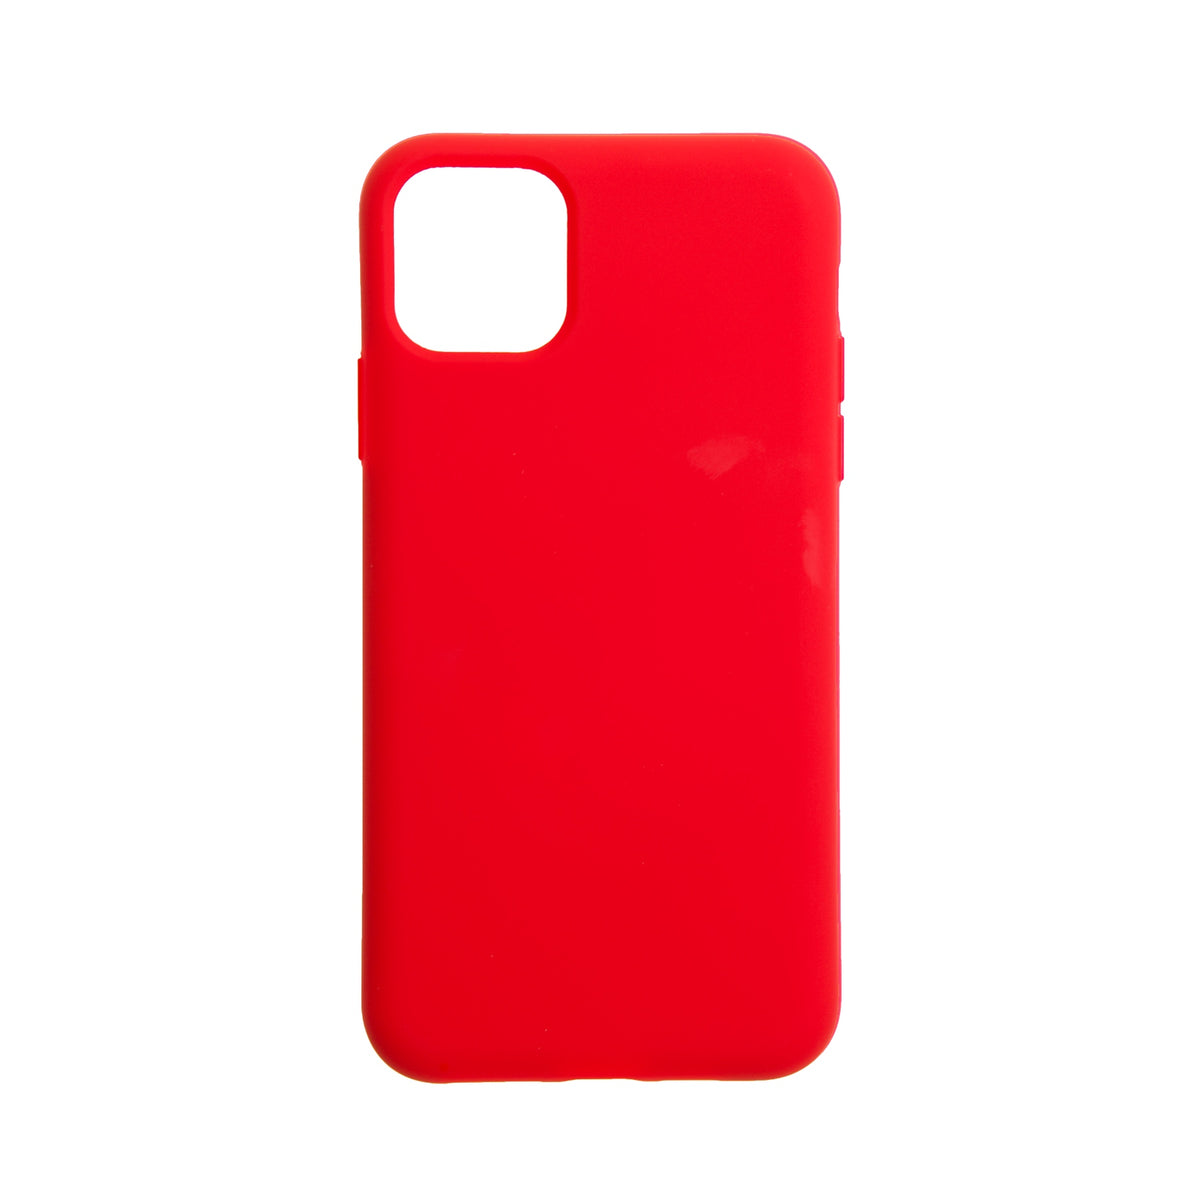 Estuche EL REY silicon rojo  - iphone 11 pro max